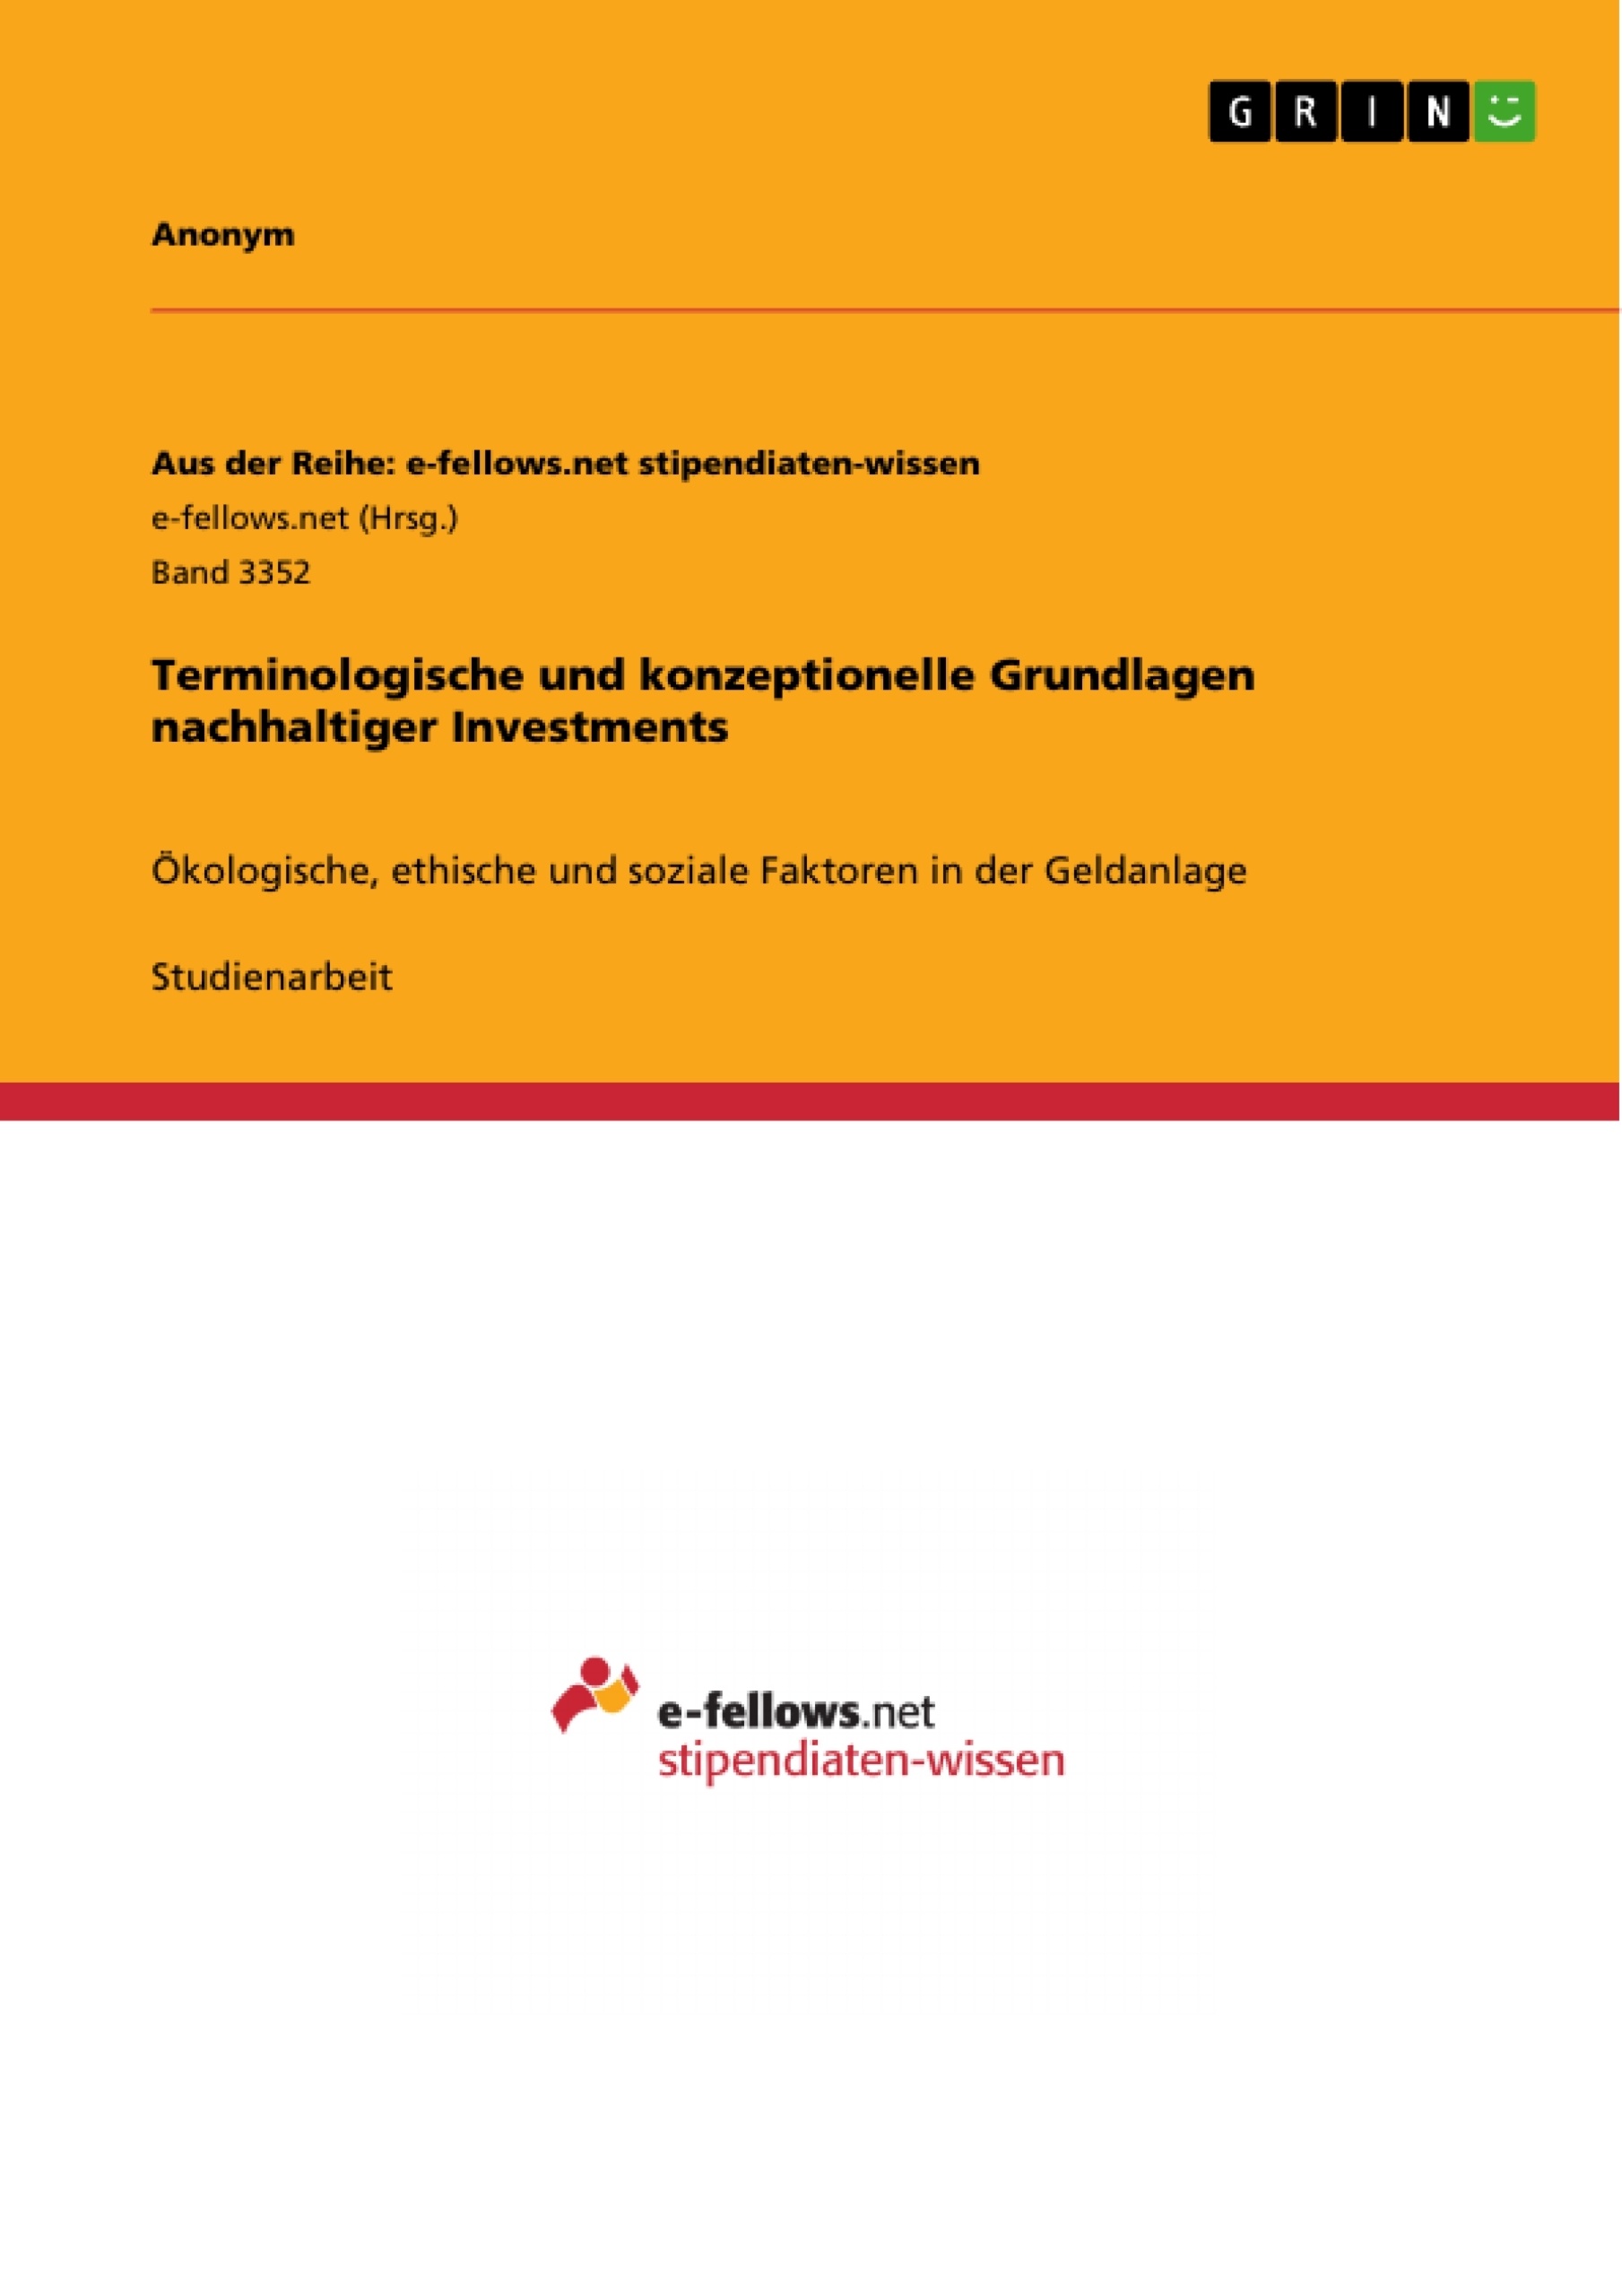 Title: Terminologische und konzeptionelle Grundlagen nachhaltiger Investments